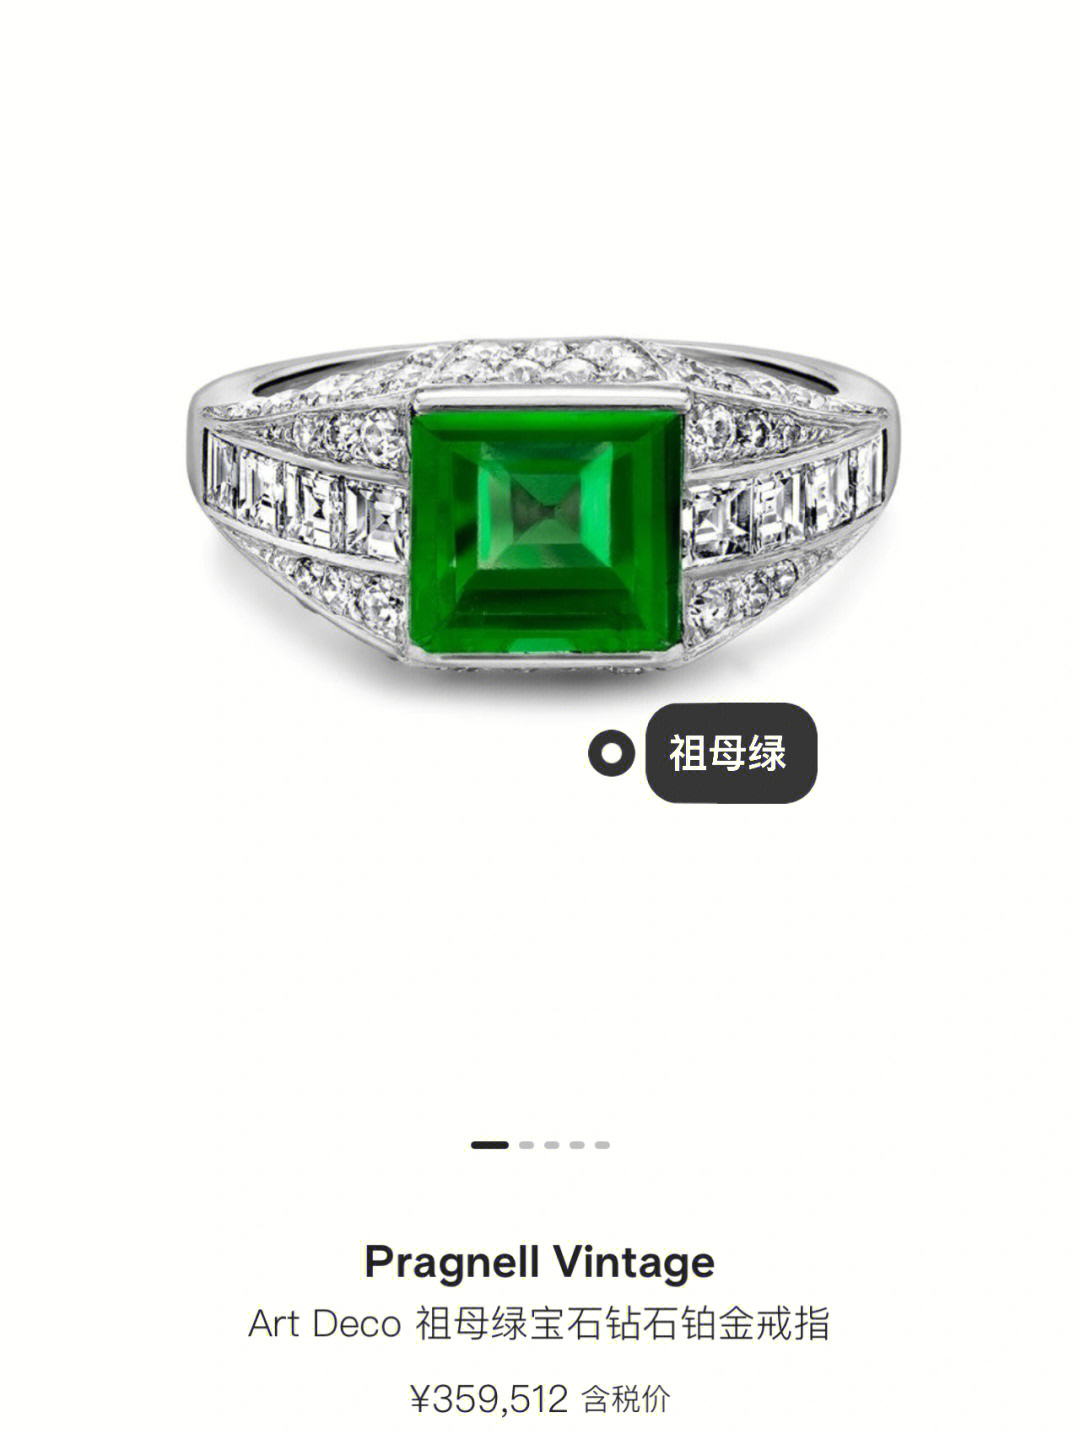 祖母绿被称为绿宝石之王,国际珠宝界公认的四大名贵宝石之一(红蓝绿